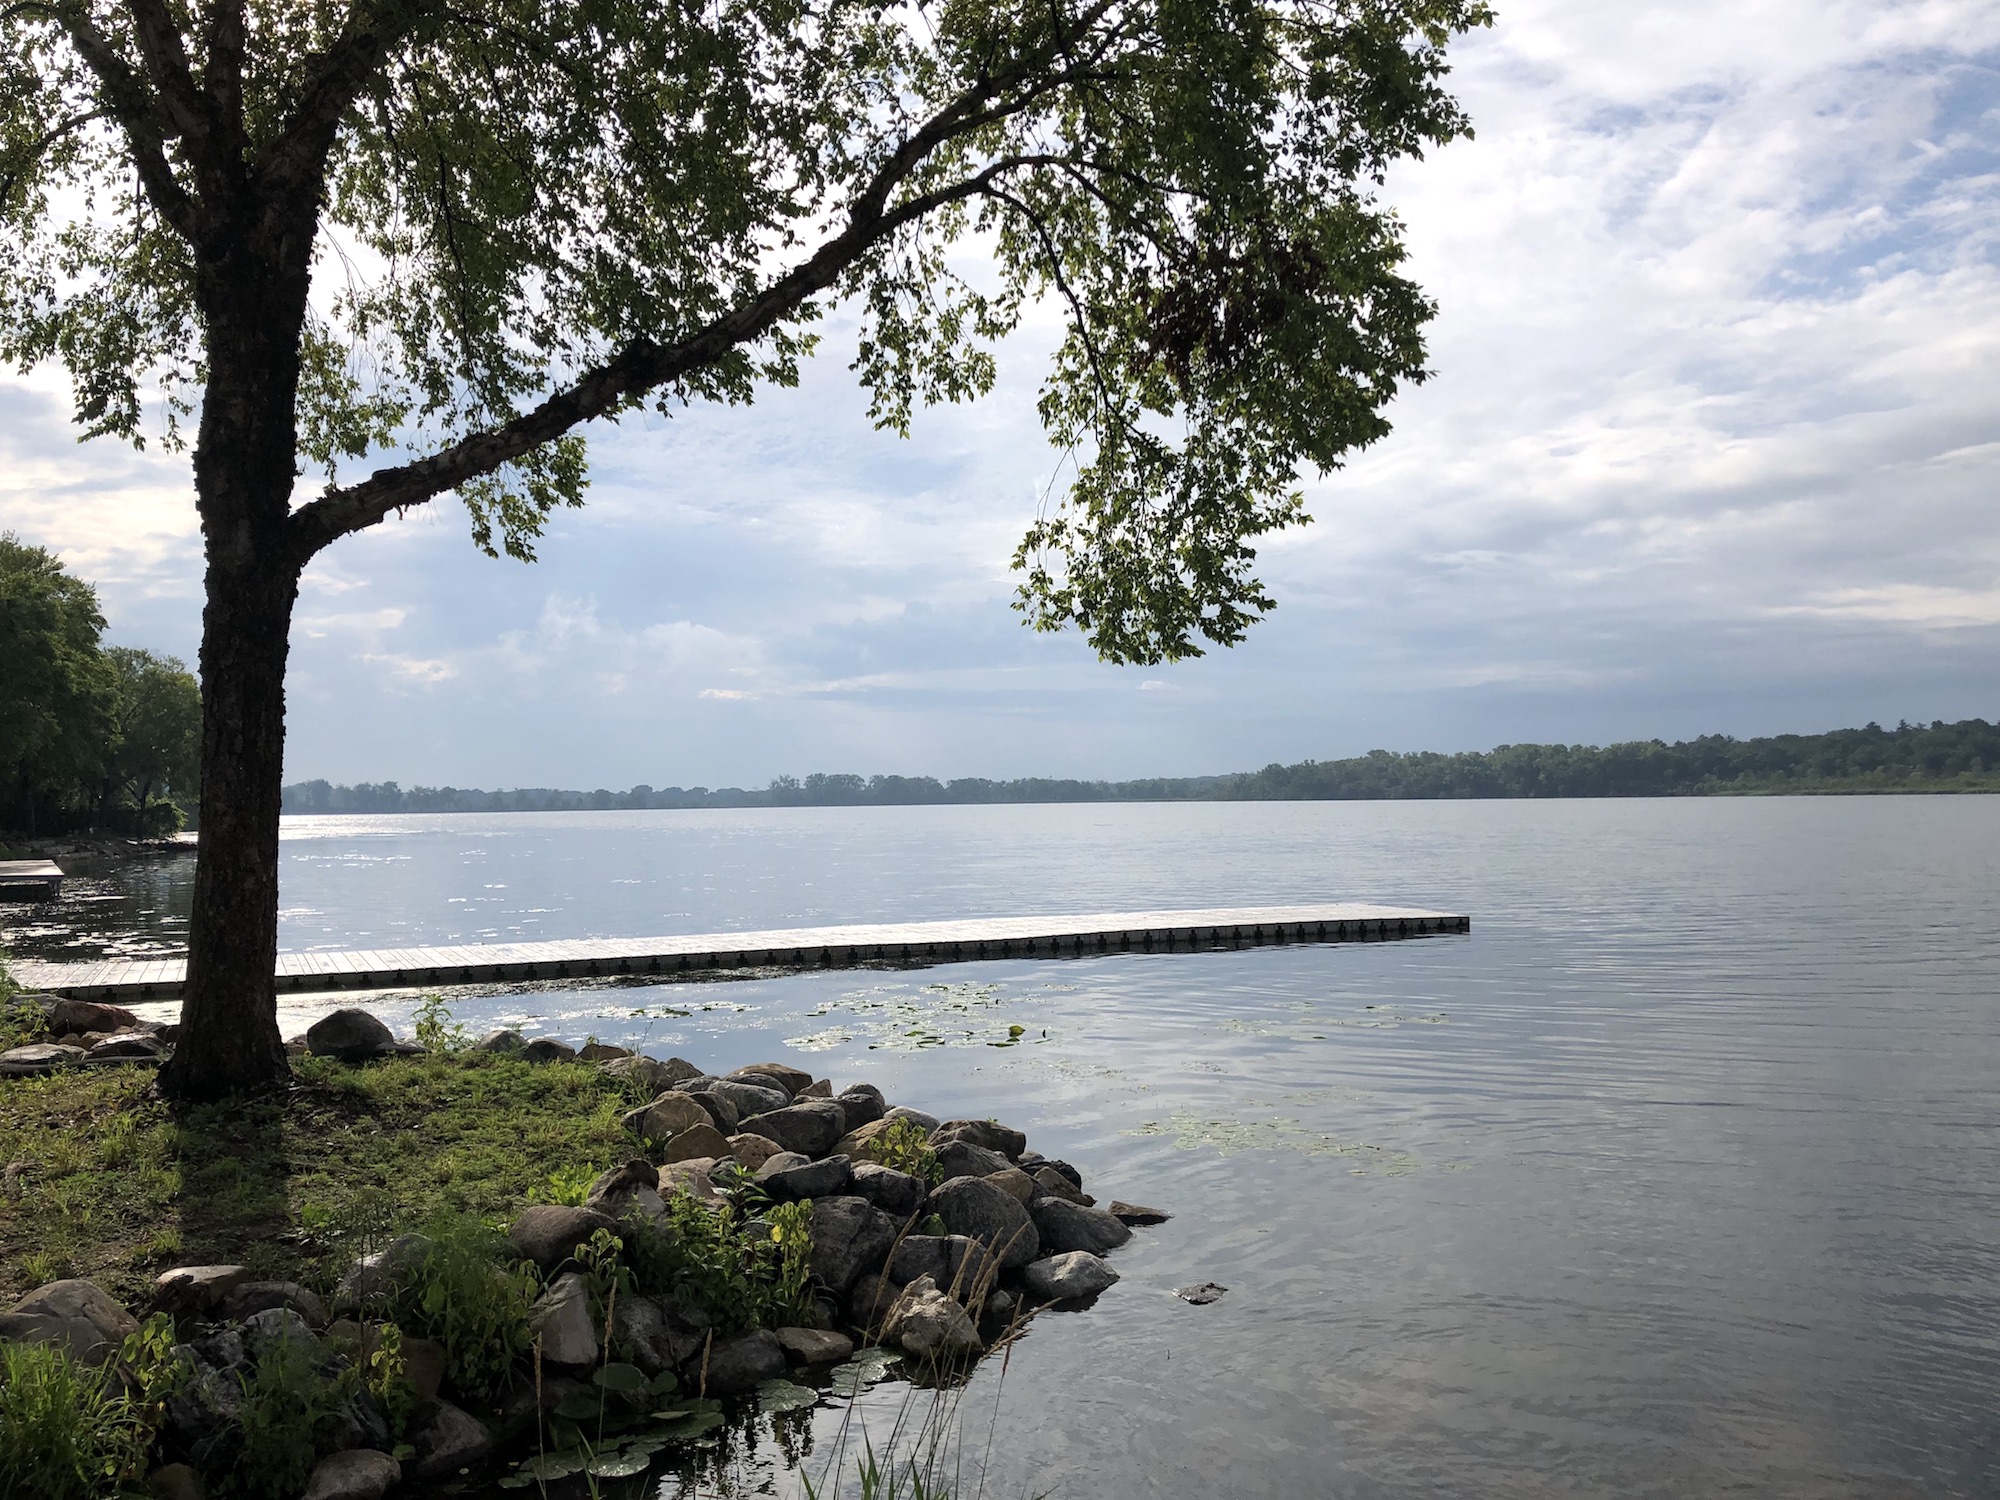 Lake Wingra on July 6, 2019.